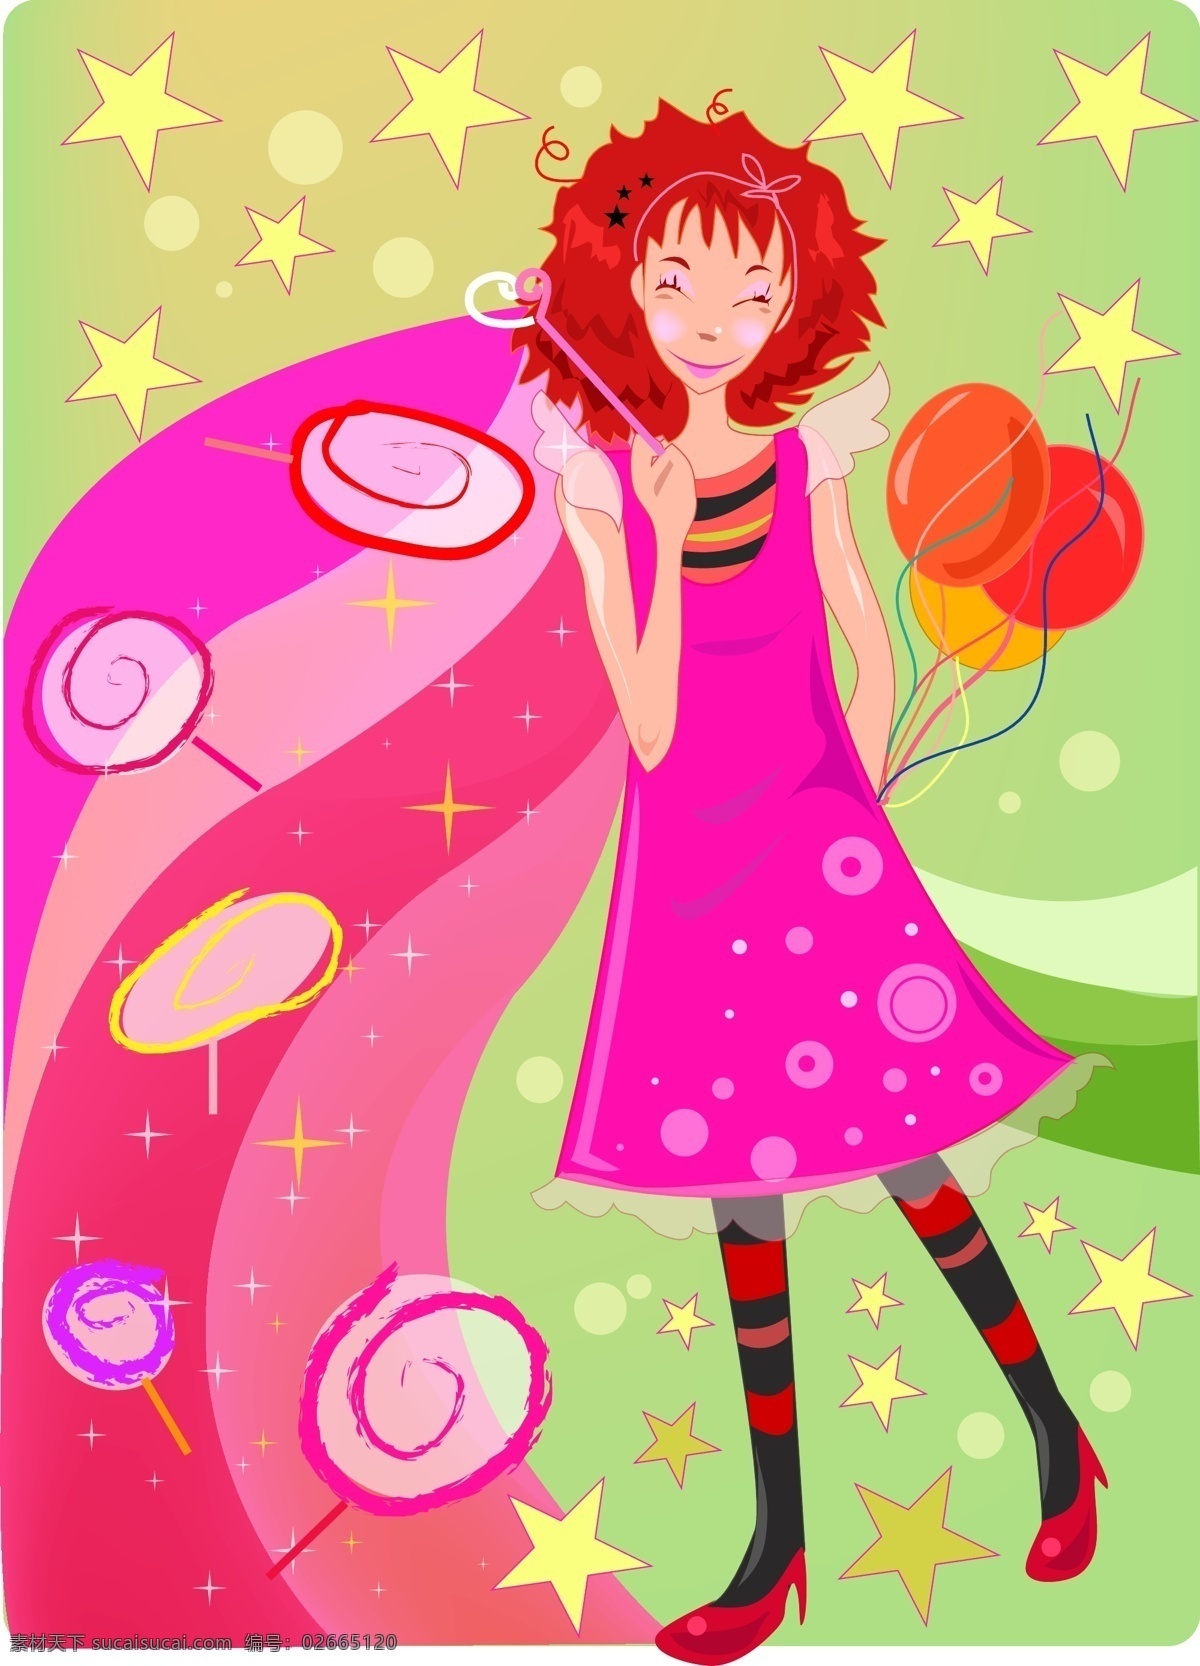 红 发 长裙 女孩 棒棒糖 卡通女孩 气球 矢量图 星星 其他矢量图